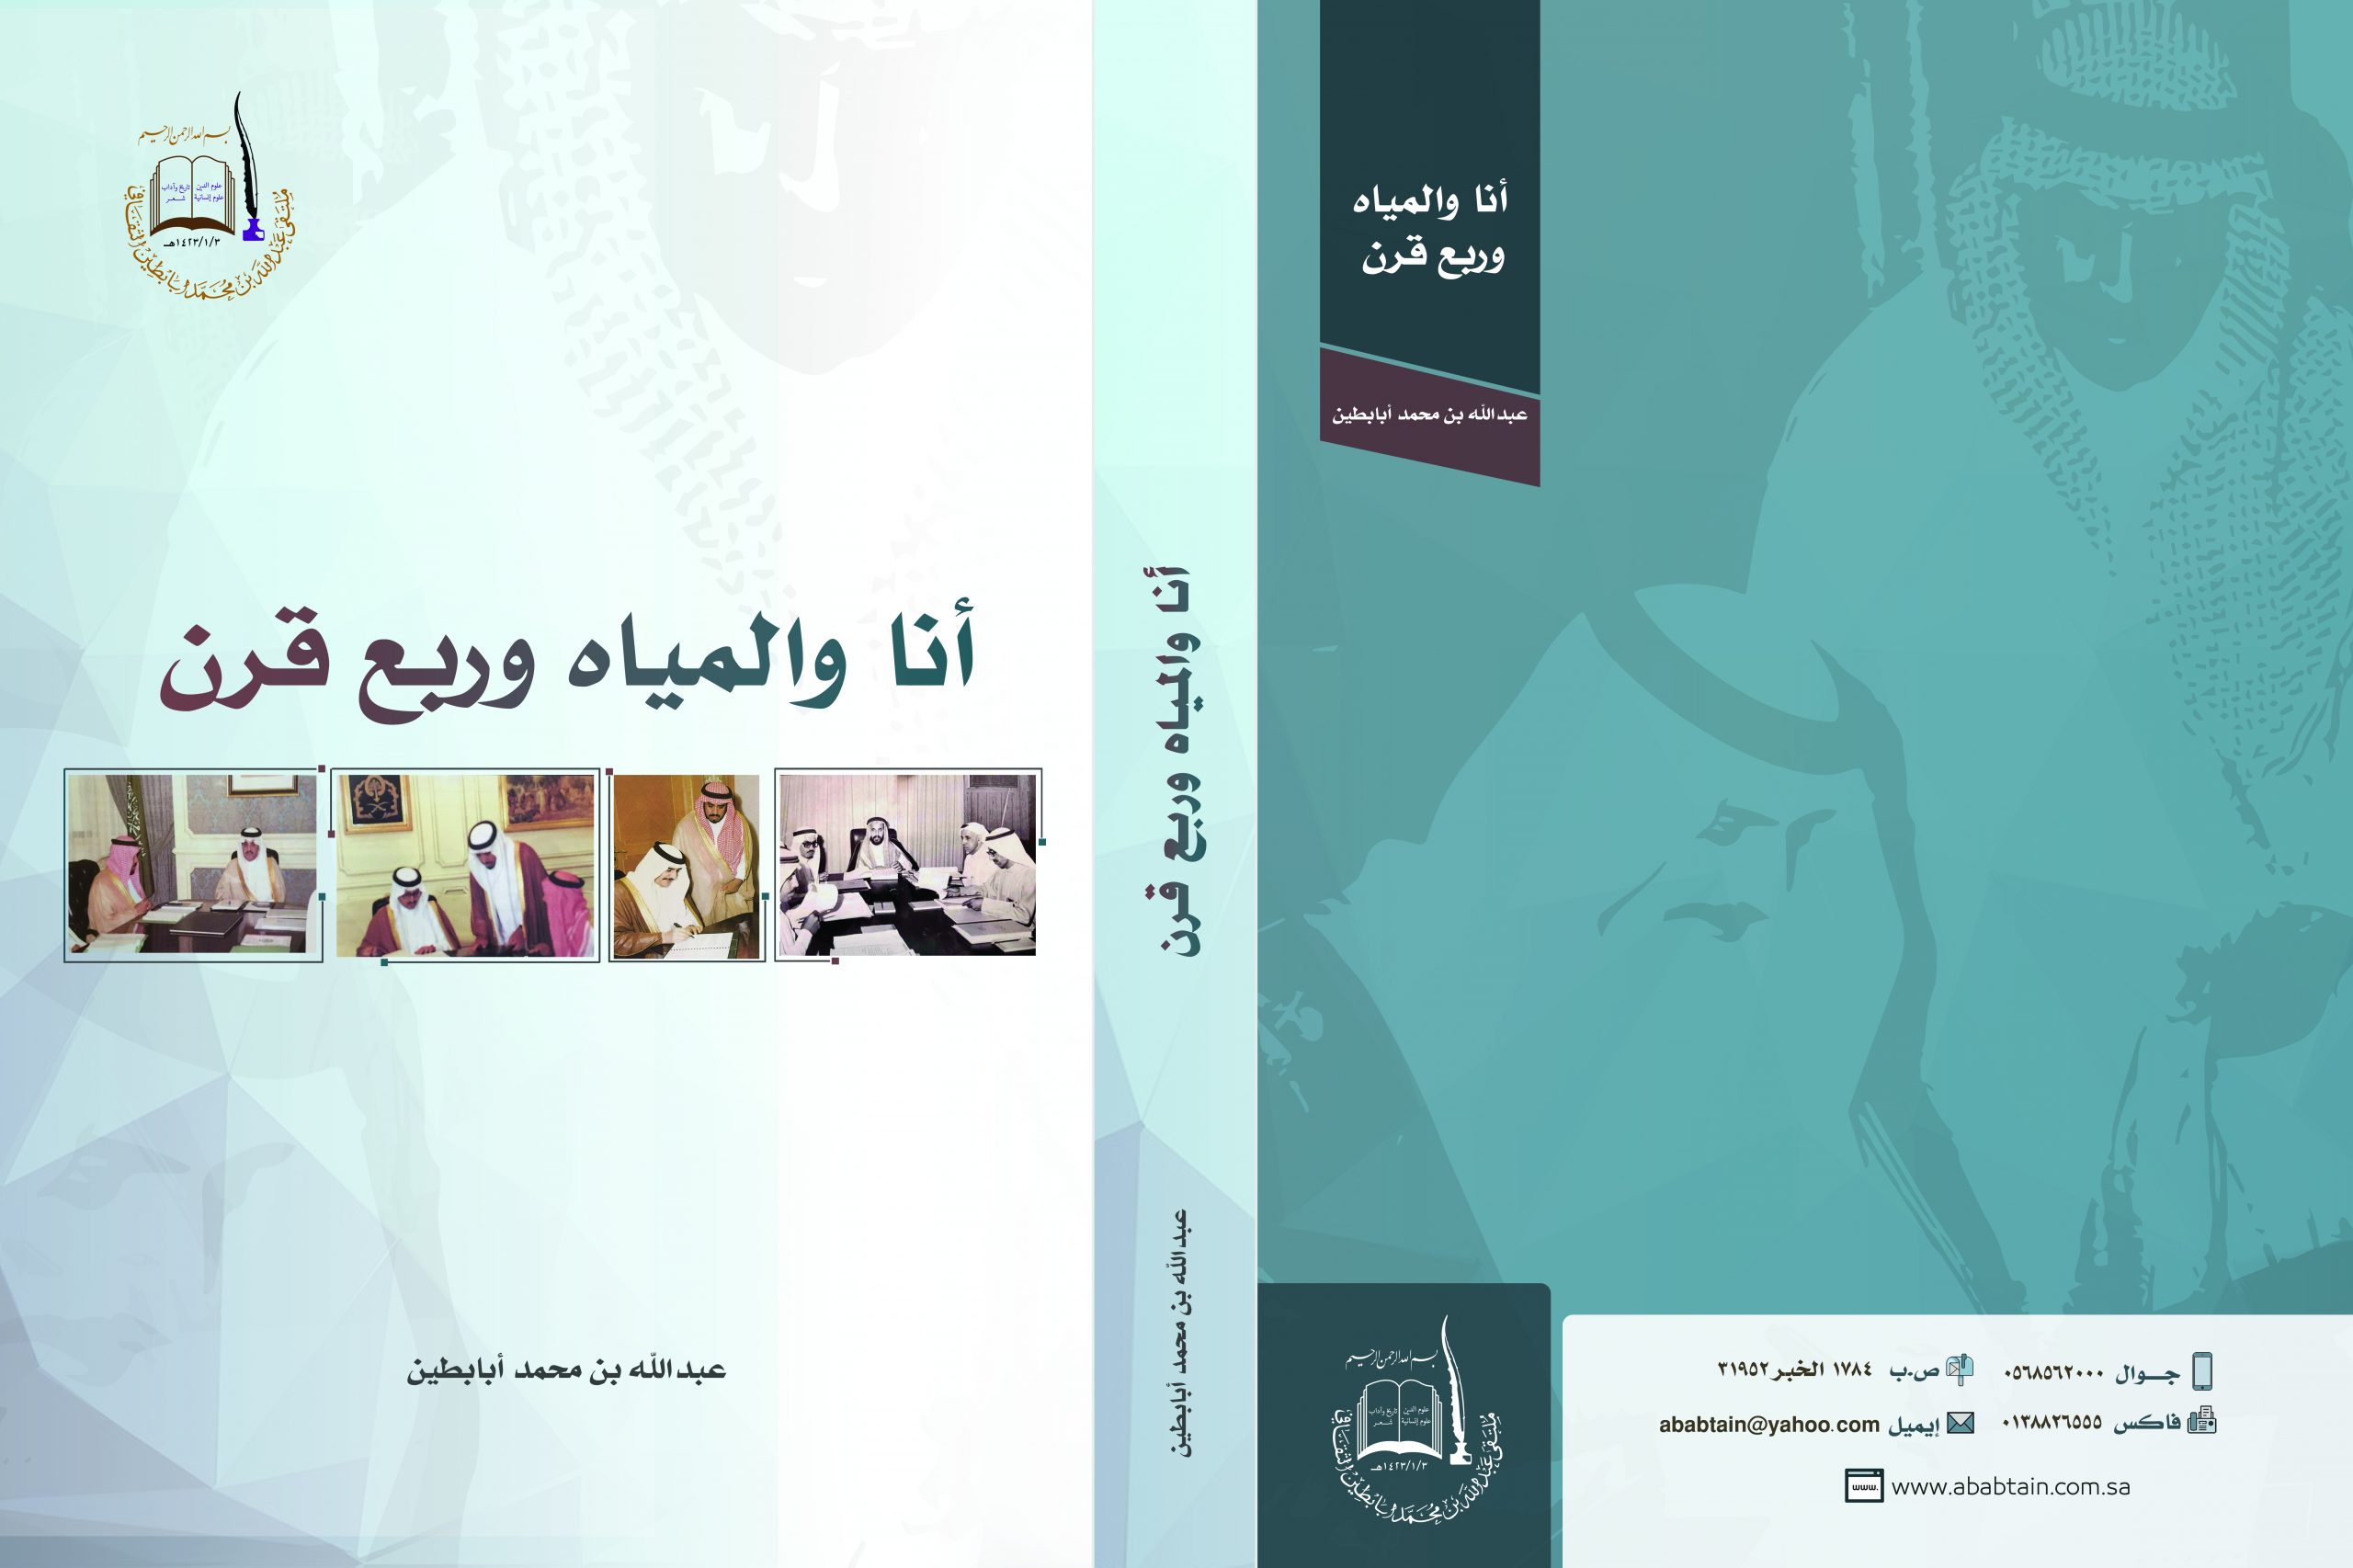 كتاب «أنا والمياه وربع قرن» – إعداد الأستاذ عبدالله بن محمد بن عبدالعزيز أبابطين